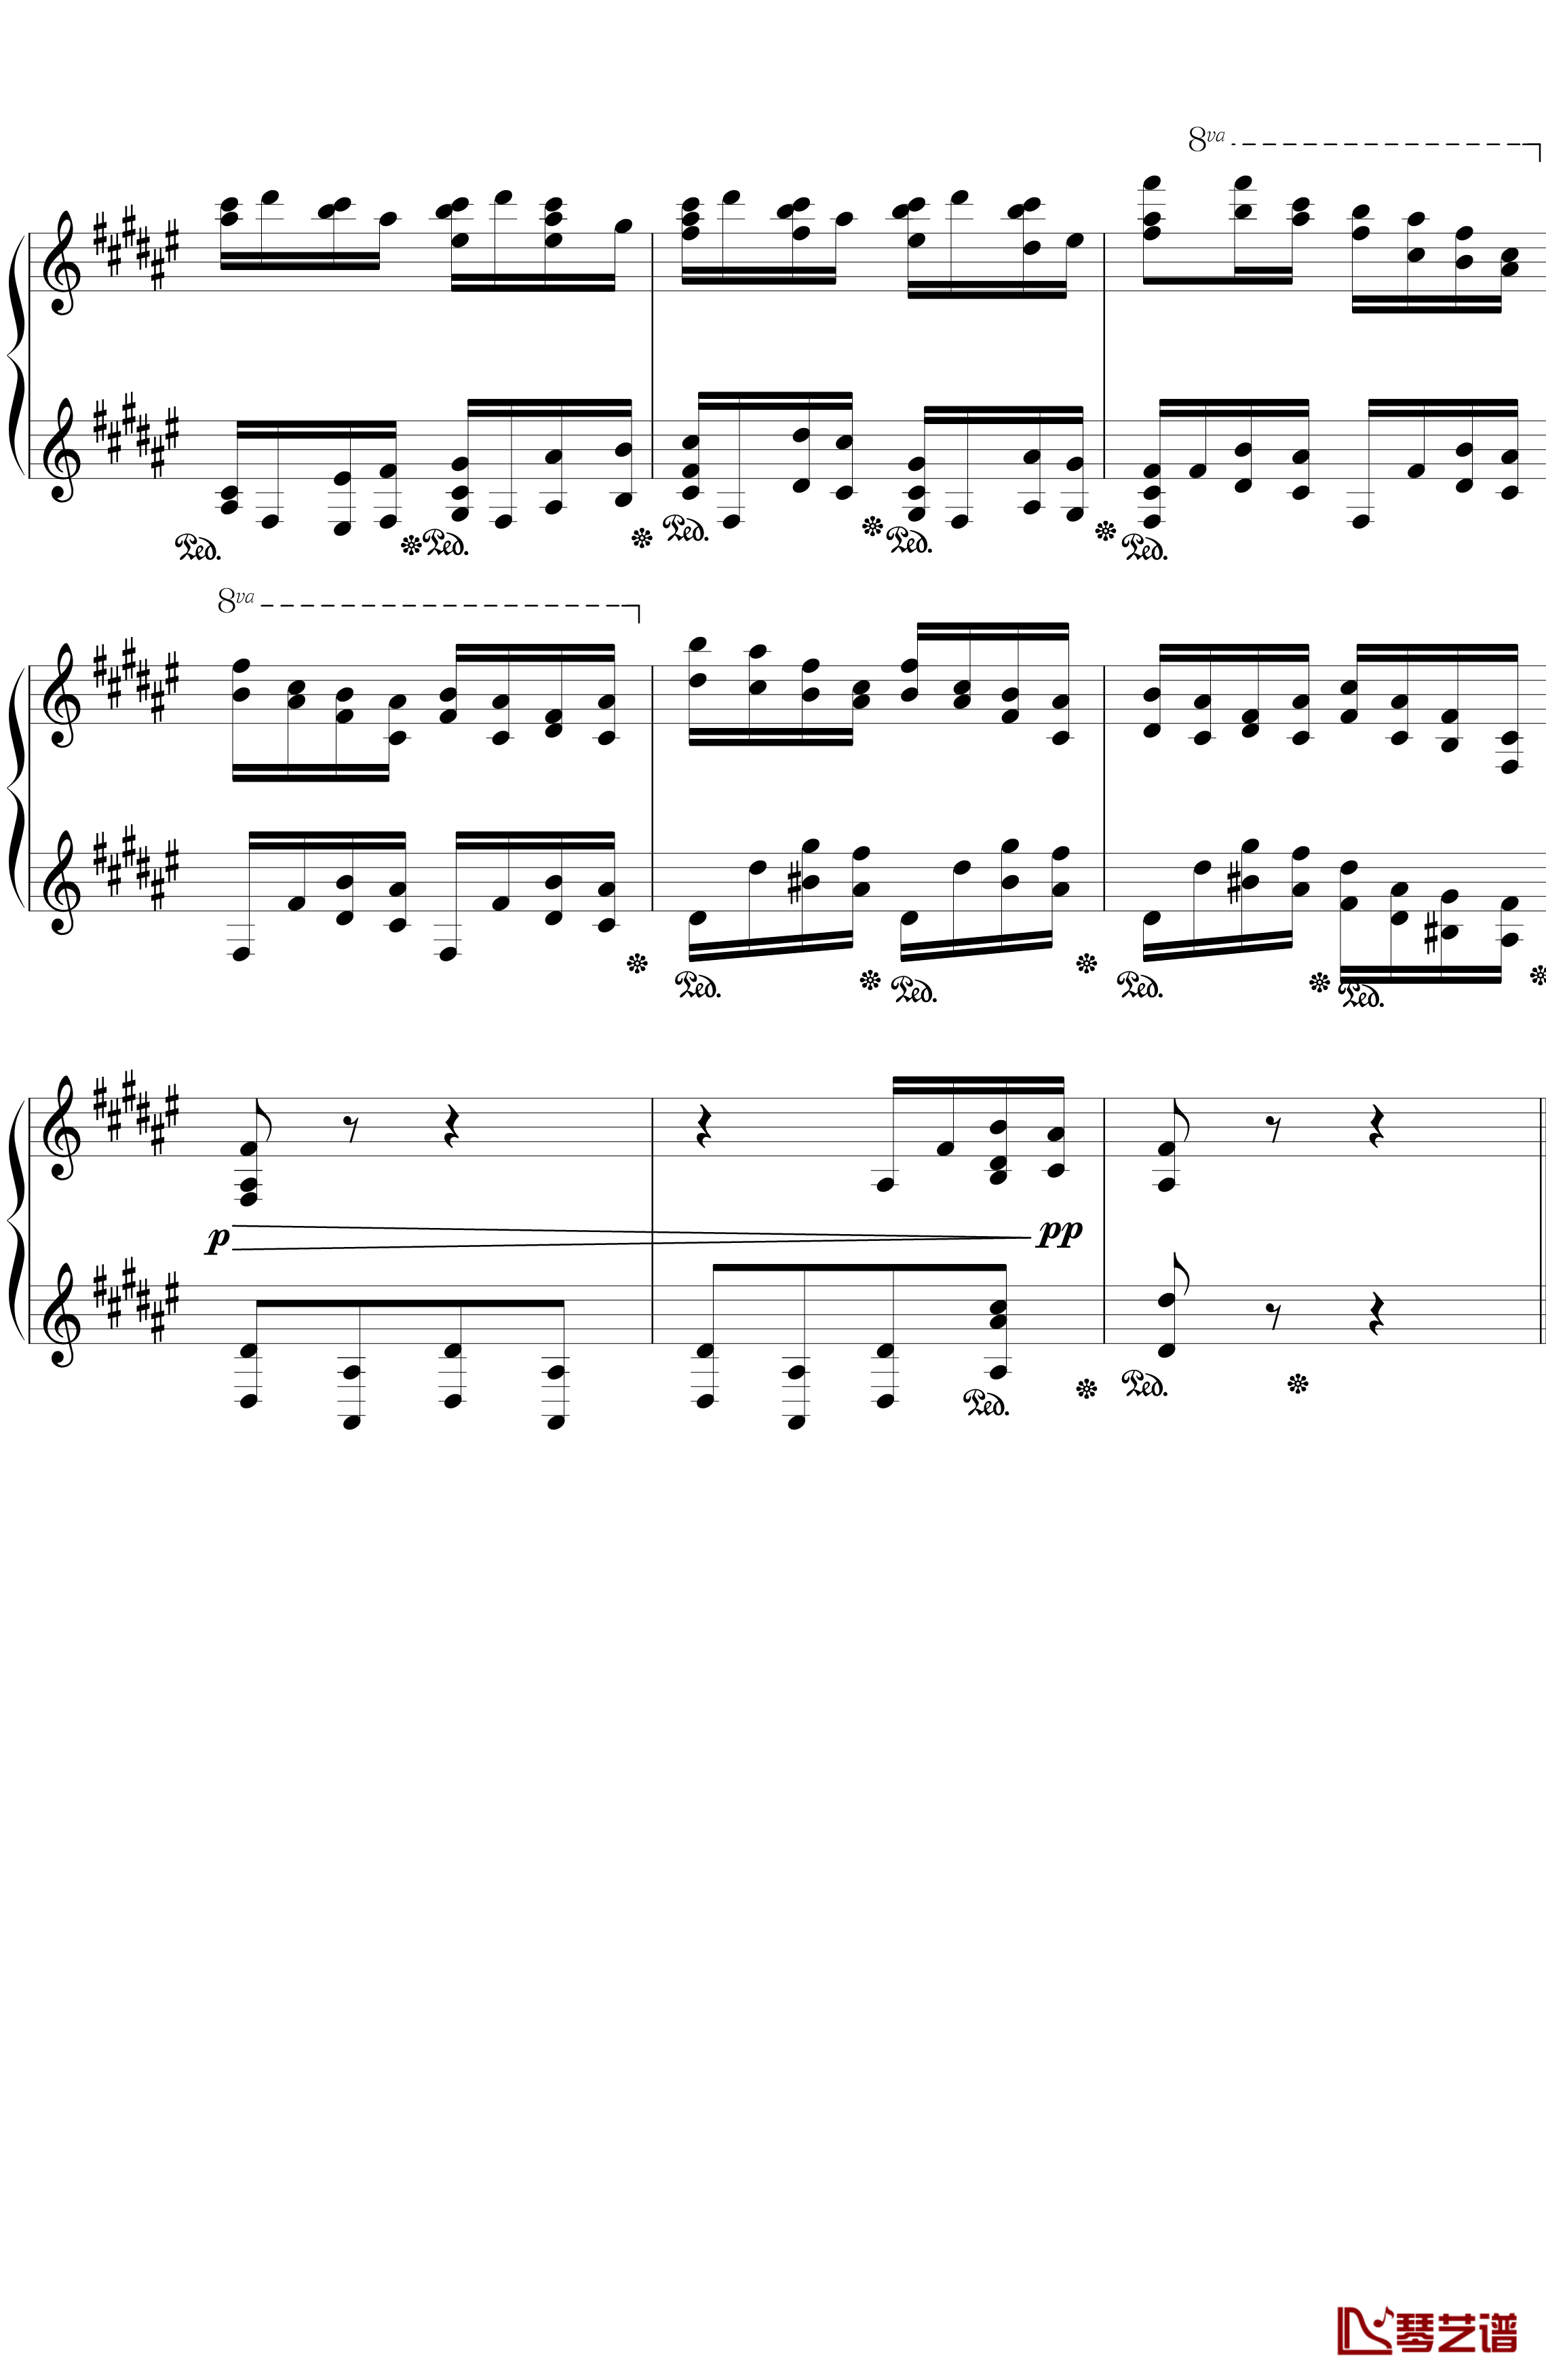 戈多夫斯基练习曲OP25NO9-1钢琴谱-蝴蝶4